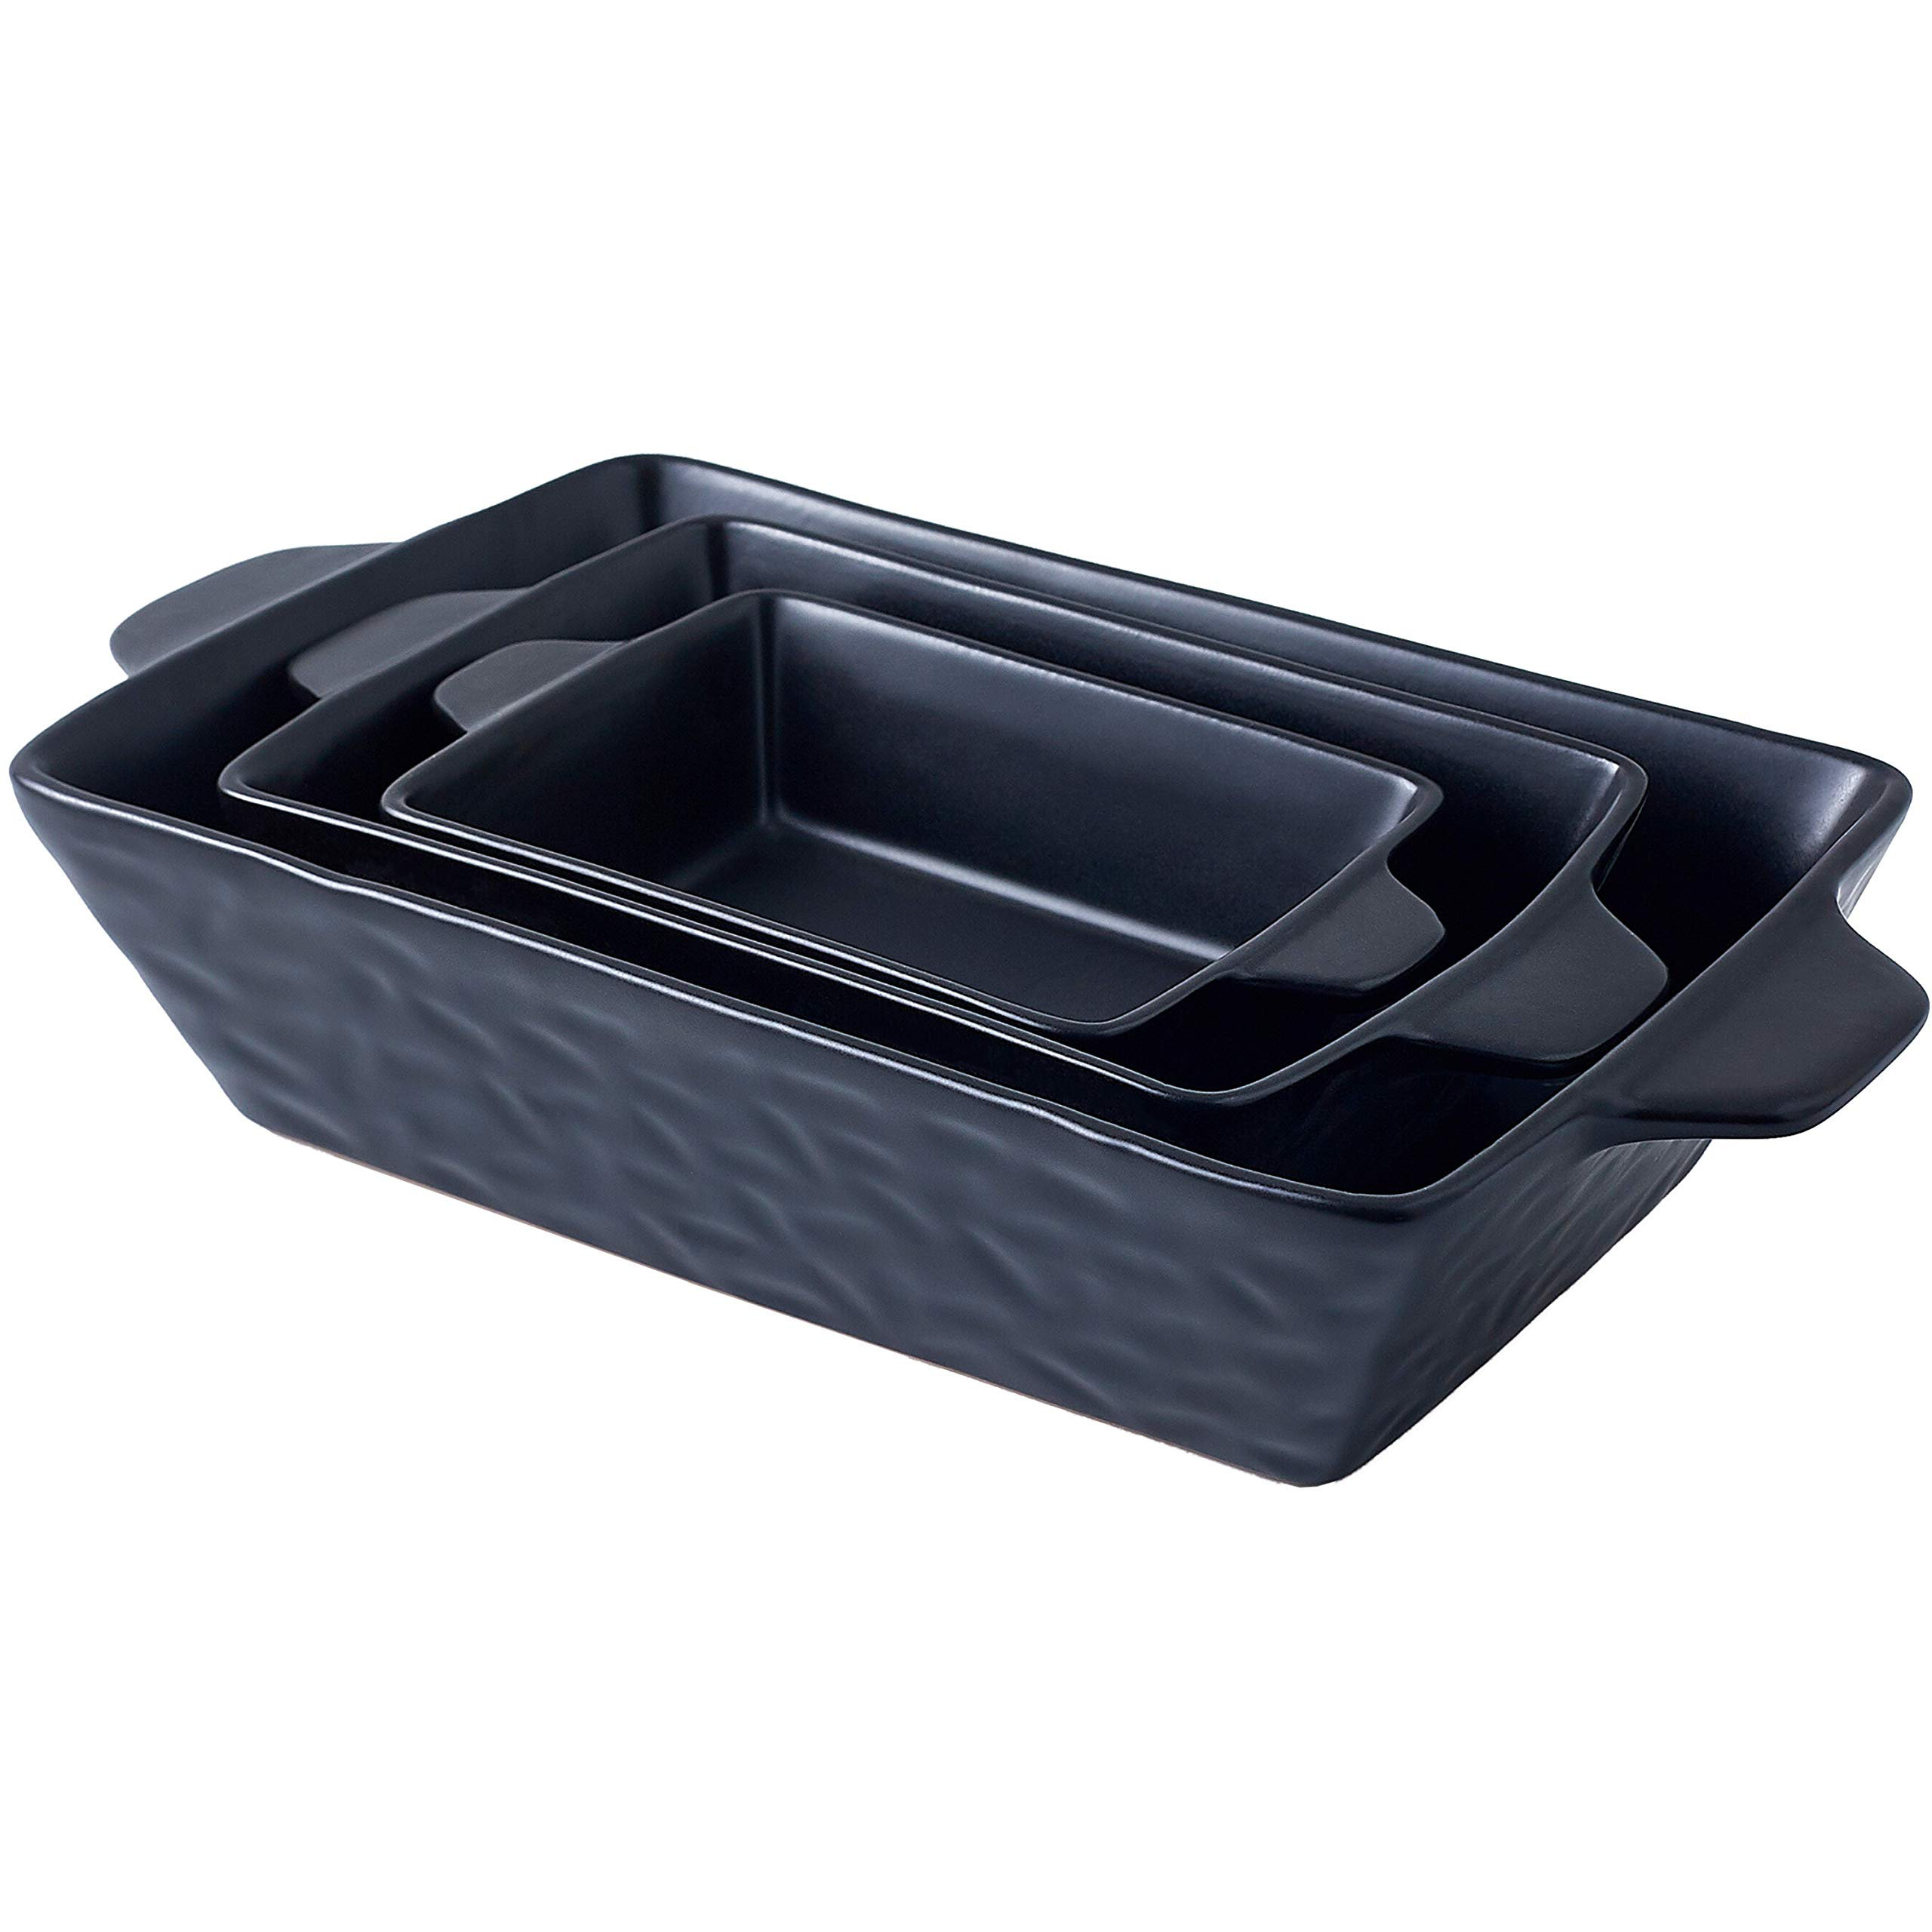 3-Pcs. Rectangular Ceramic Bakeware Set - Durable Baking Dishes Set,  Odor-Free Hybrid Ceramic Non-Stick Baking Pans, Dishwasher Safe (Red)